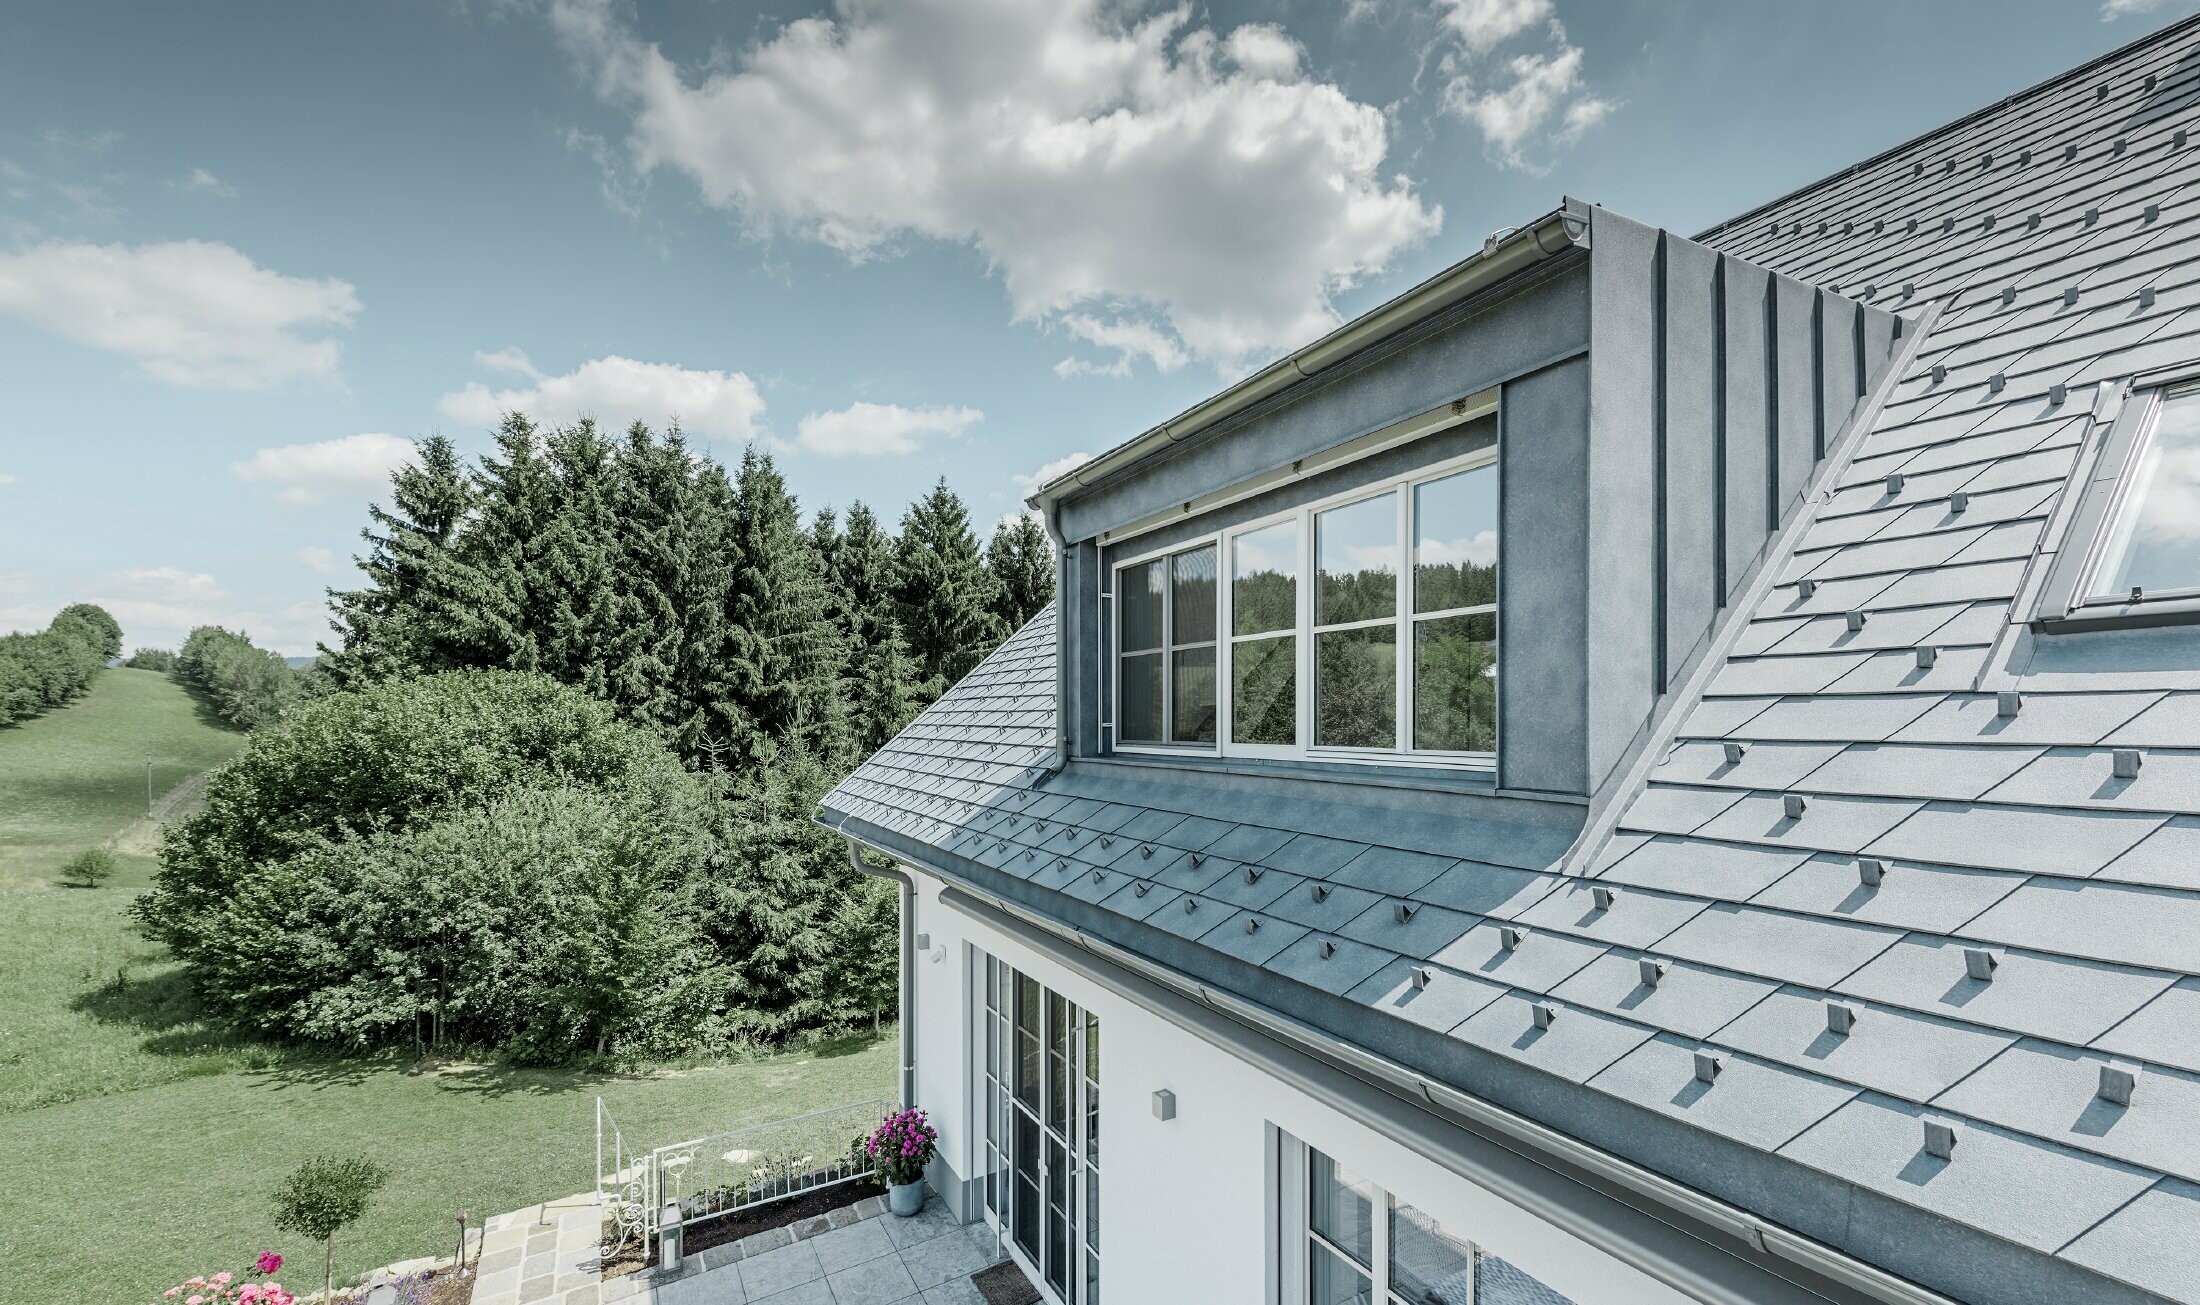 Dakkapel van de nieuw gerenoveerde eengezinswoning met de PREFA dakschindel in steengrijs. De dakkapel is bekleed met Prefalz (staande fels).